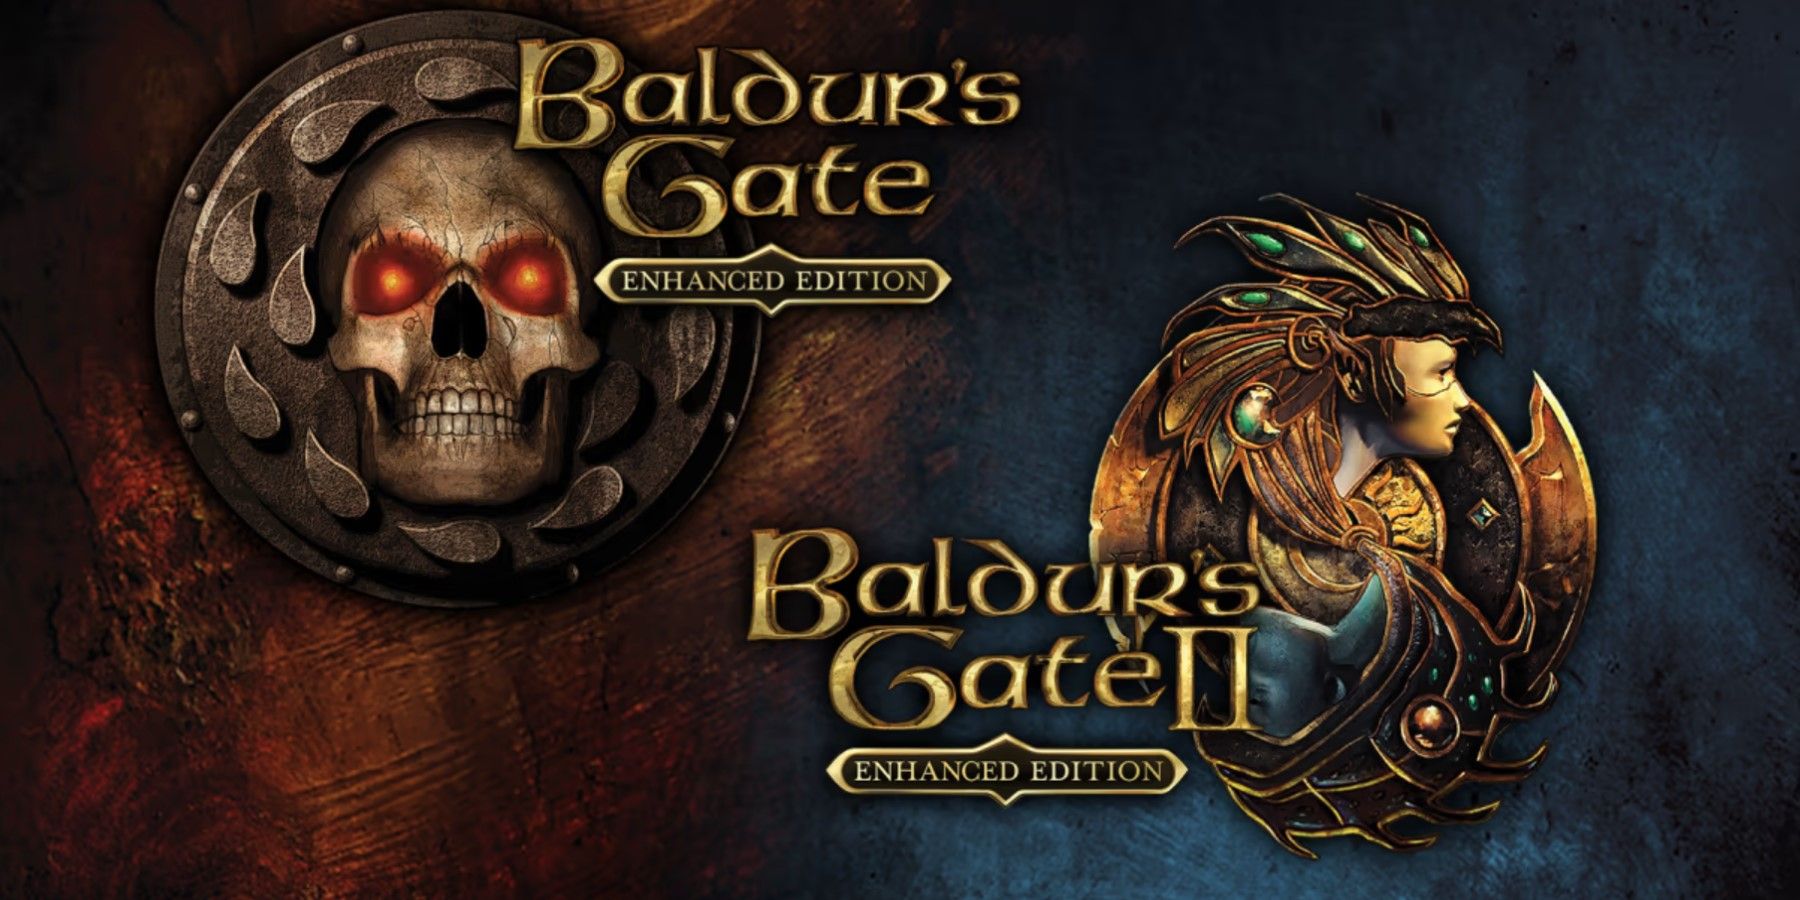 baldurs-gate-3-bg1-bg2-living-companions-feature